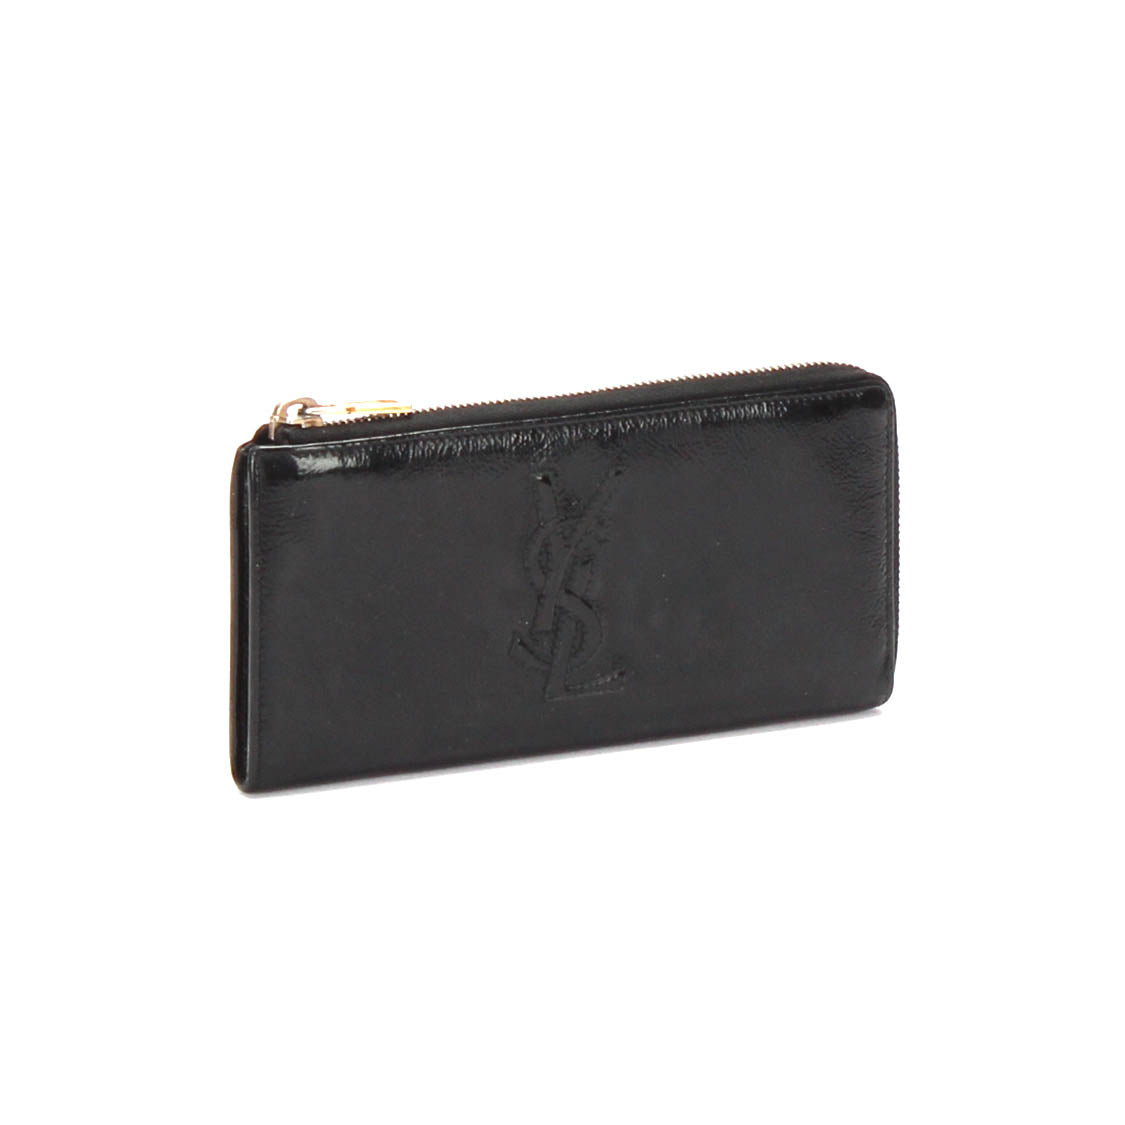 Belle de Jour Patent Leather Long Wallet